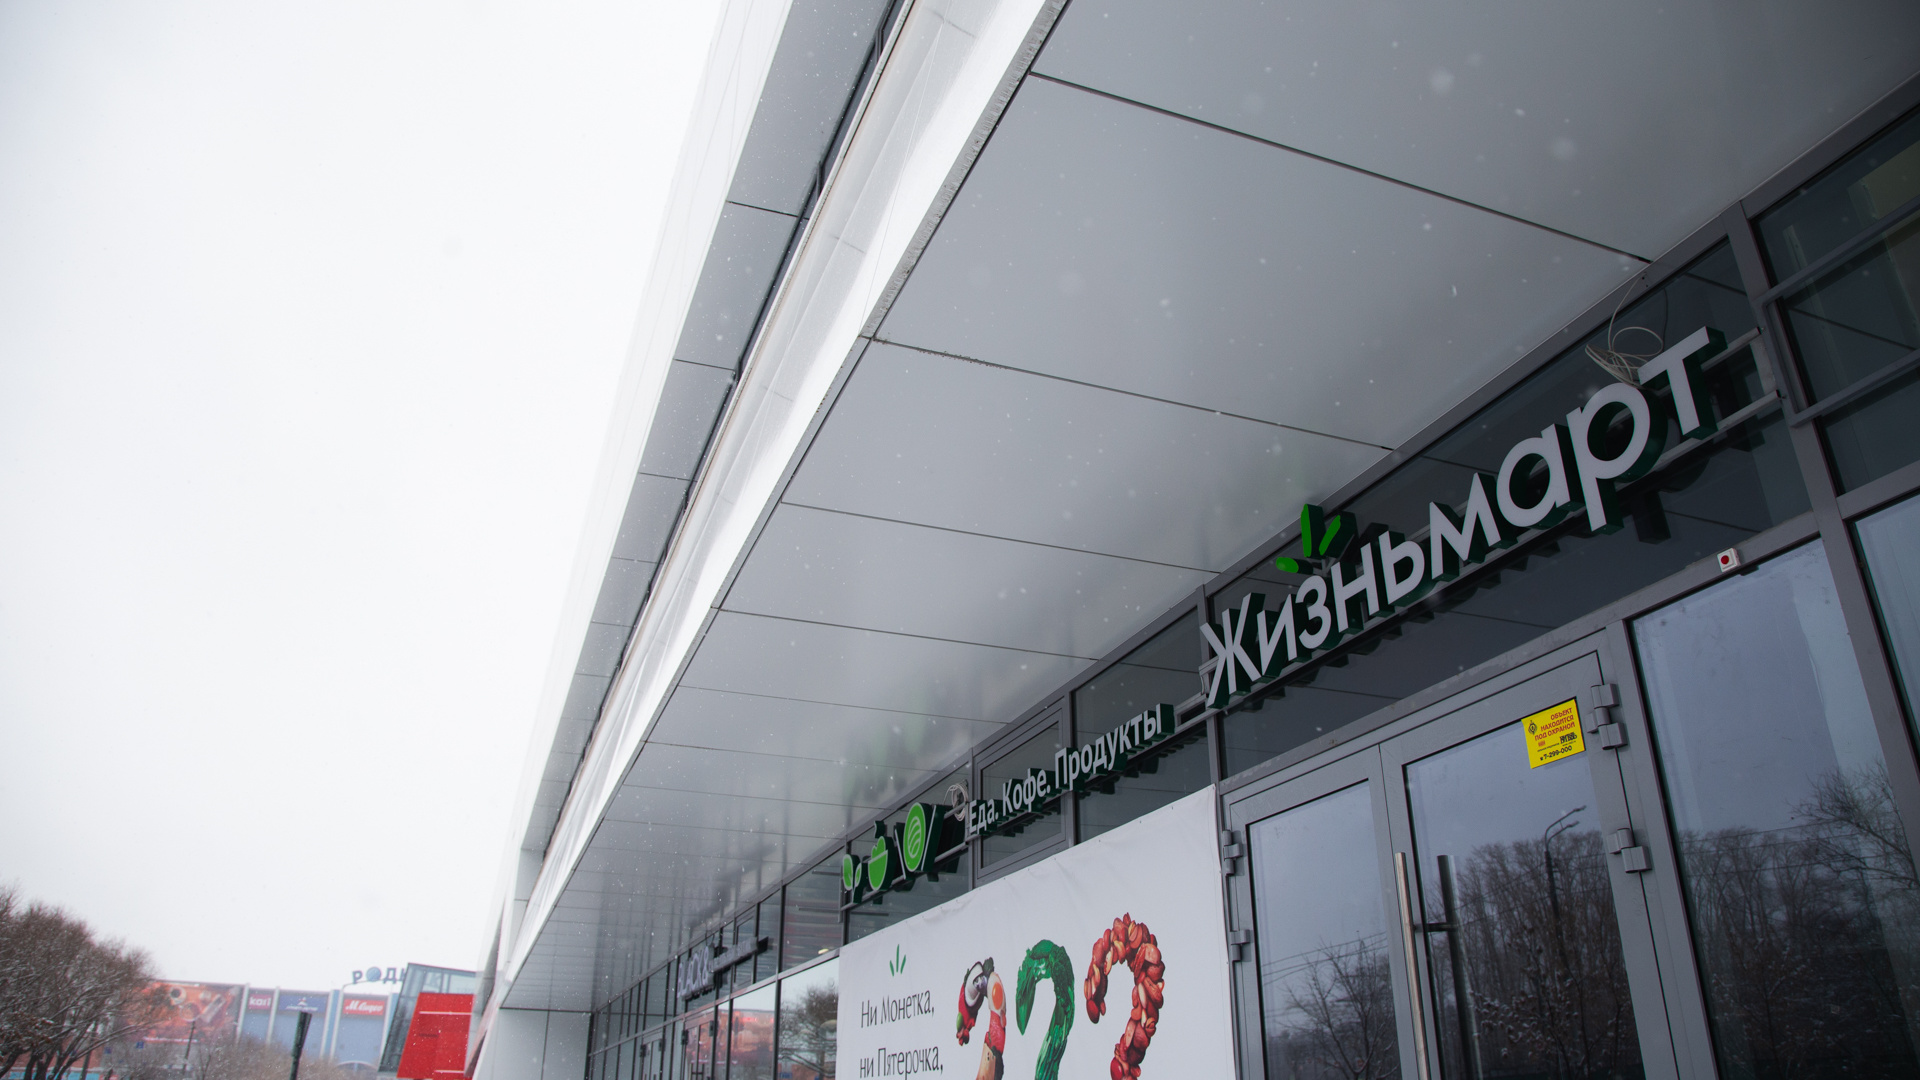 Сеть супермаркетов «Жизньмарт», несмотря на свои цены, захватывает Челябинск. Разбираемся почему